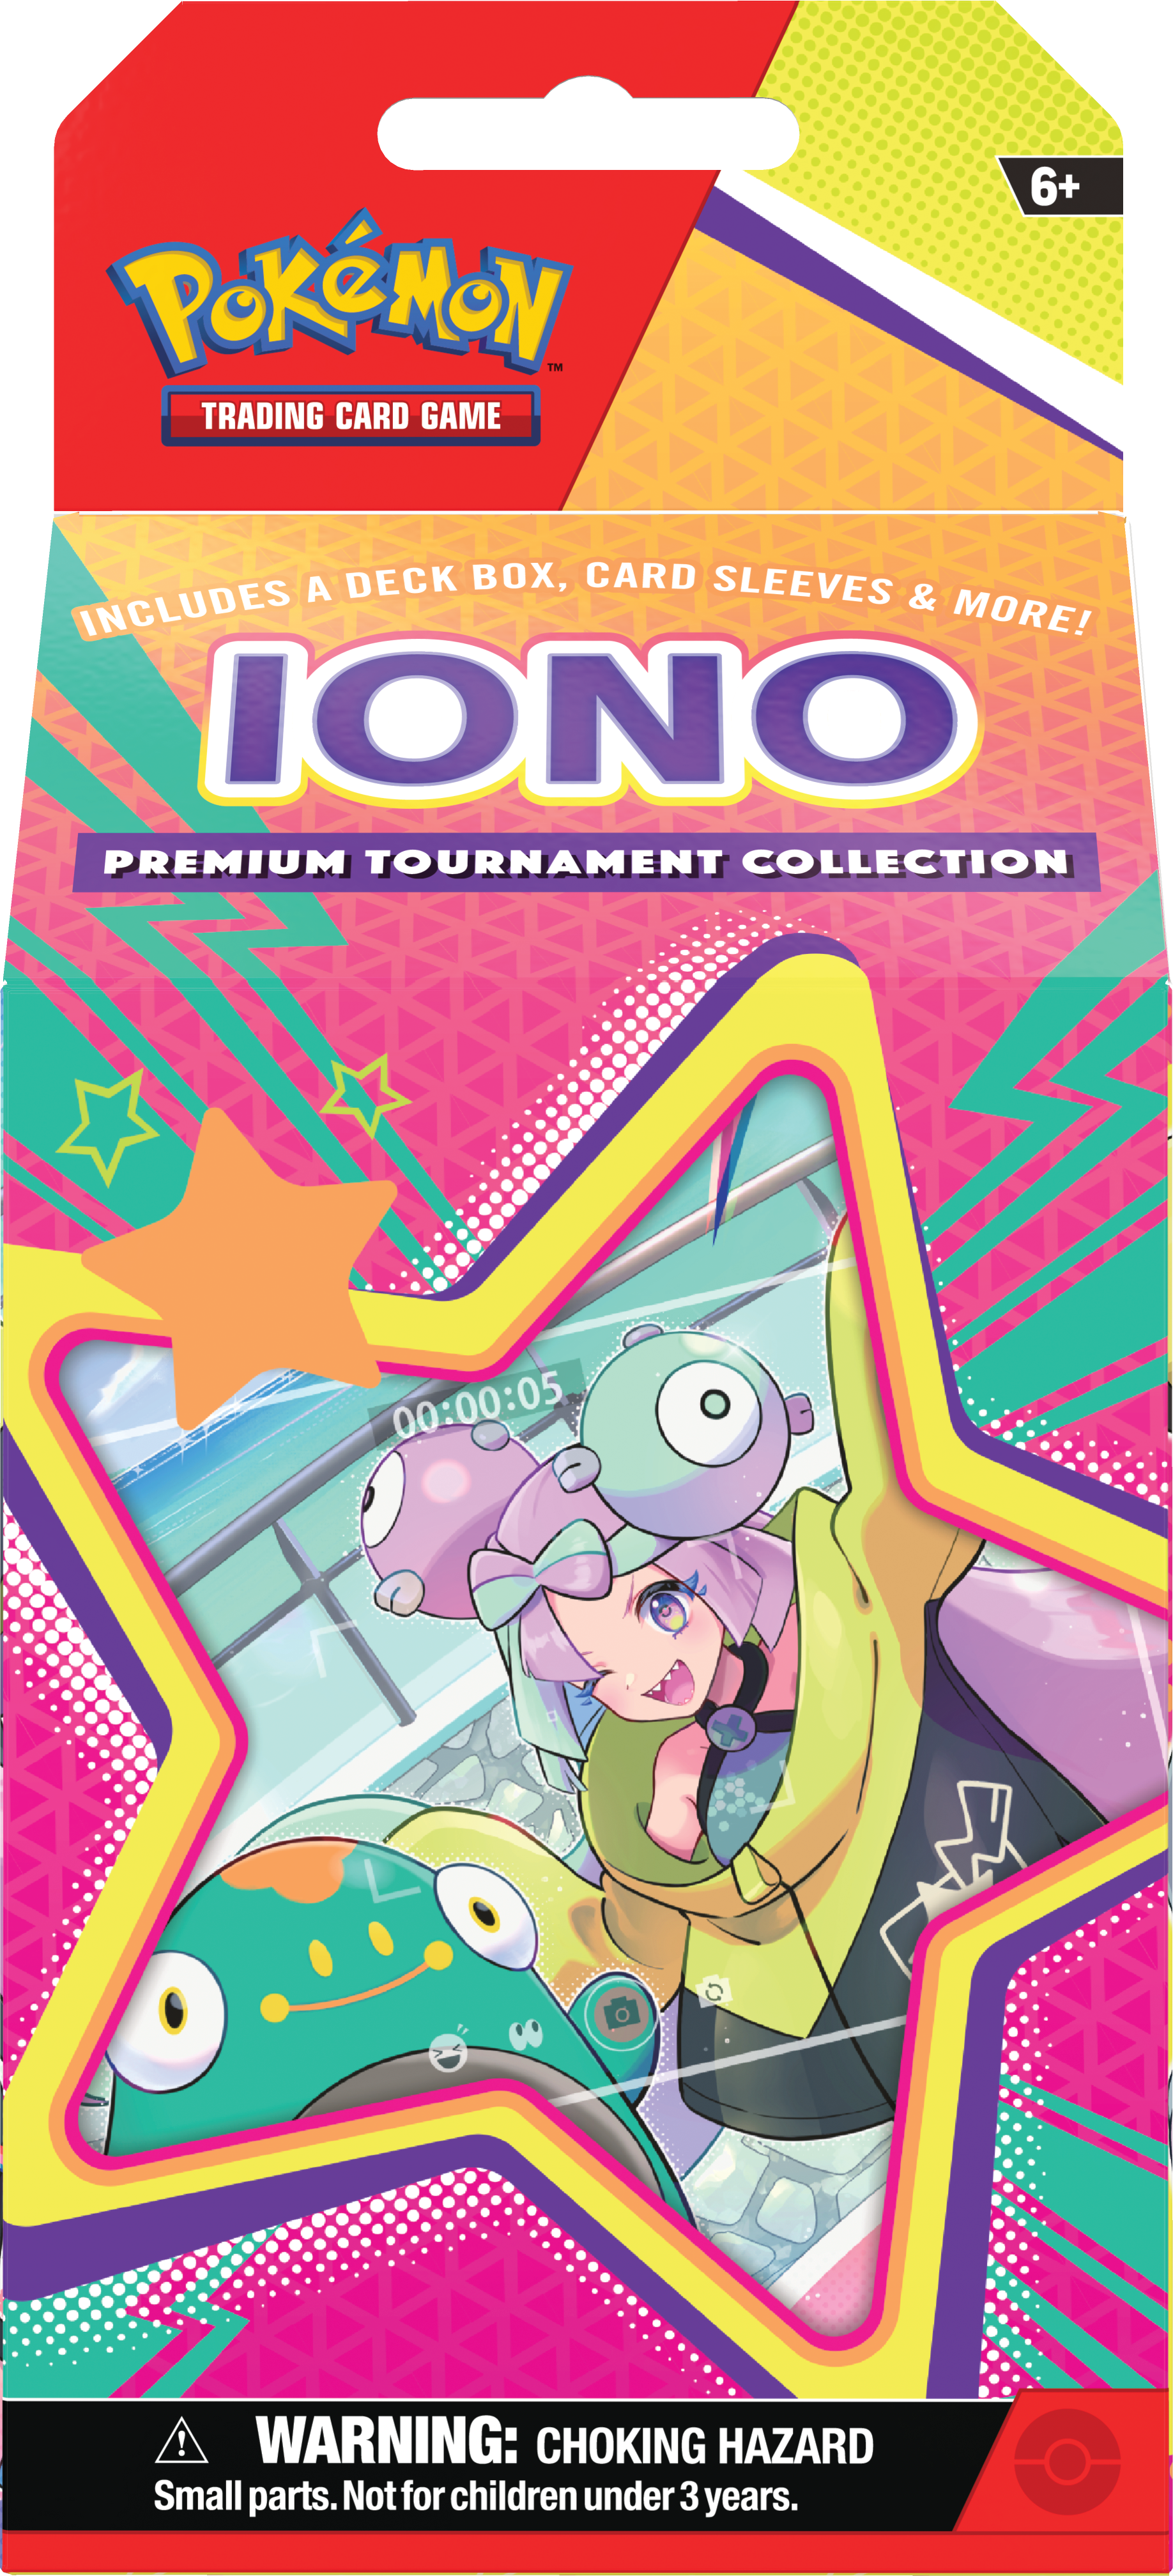 Pokemon TCG Scarlet & Violet: Premium Tournament Collection Iono En Ingles